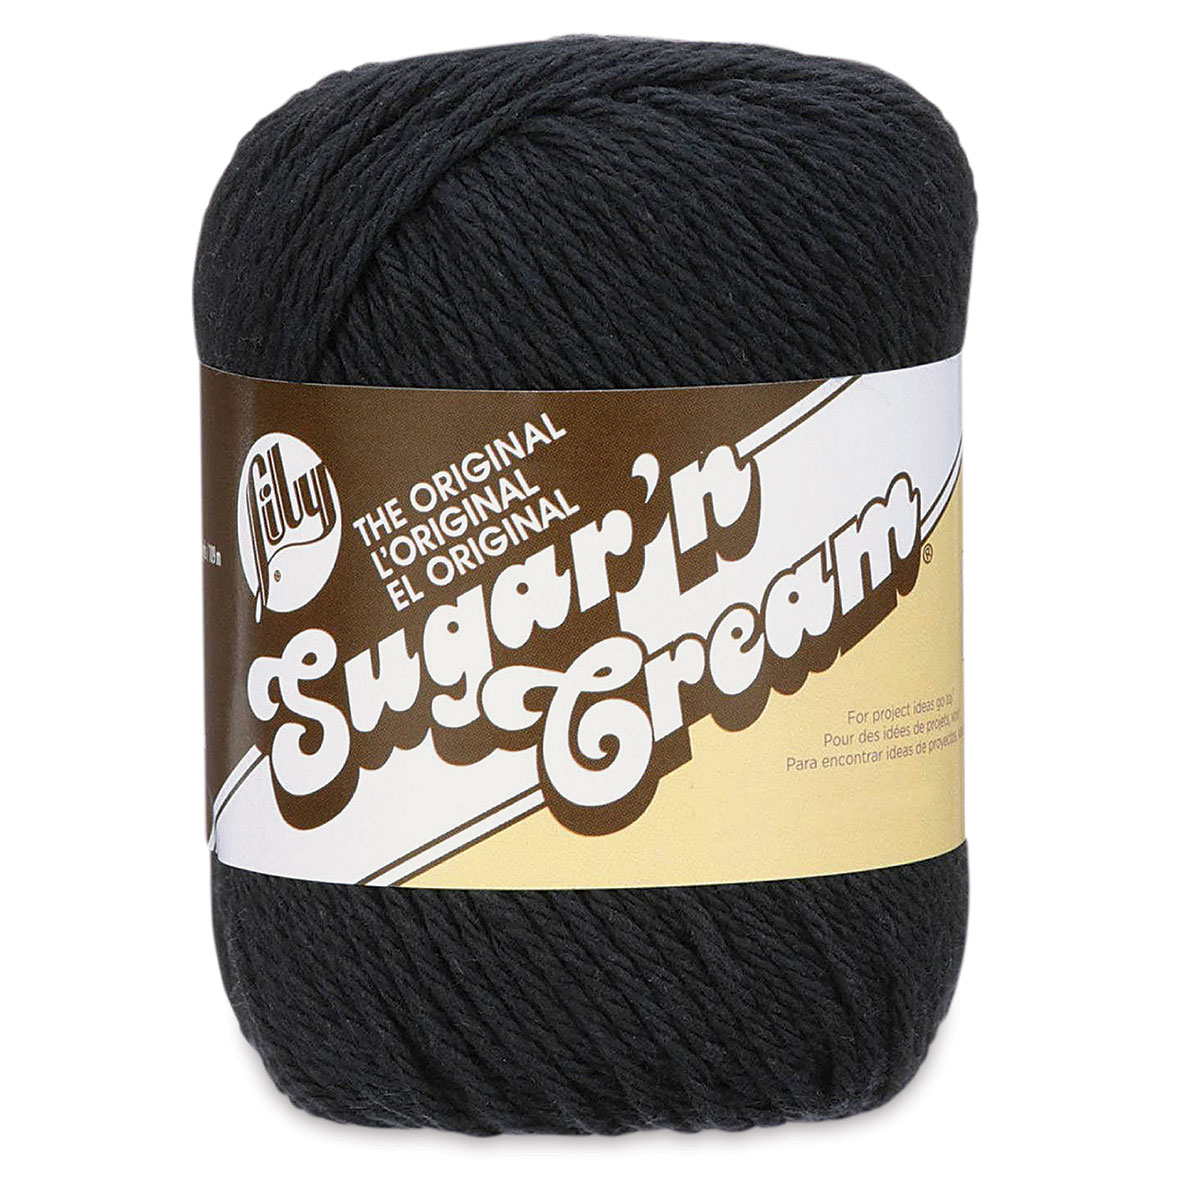 Lily Sugar 'n Cream Yarn Black